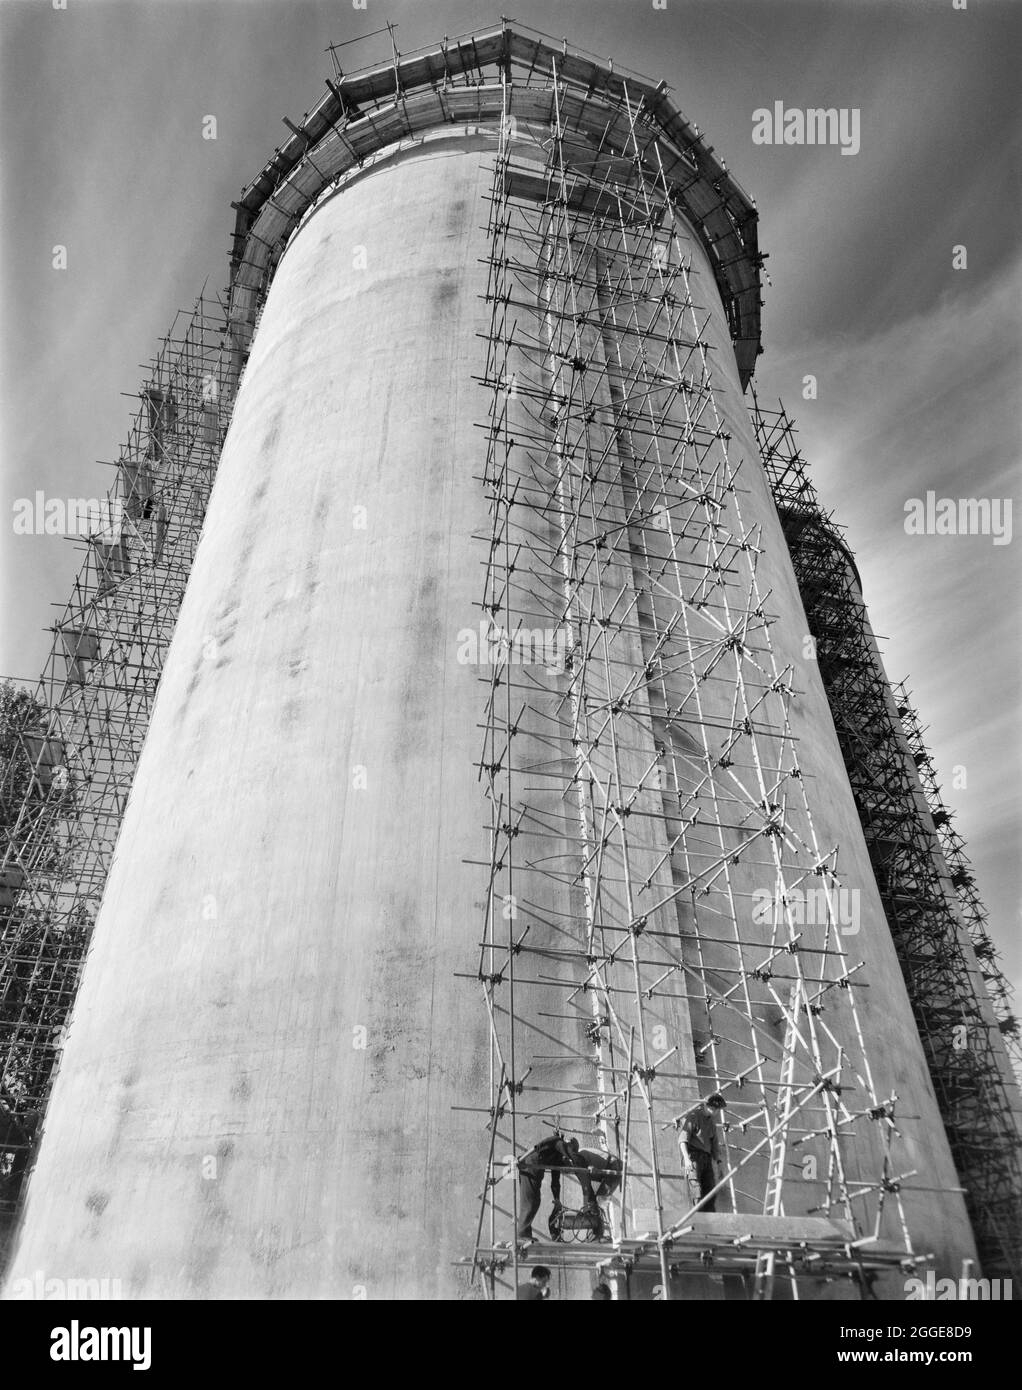 Mirando desde la base de un silo de azúcar recientemente construido en la fábrica de remolacha azucarera Allscott, mostrando una torre de andamiaje erigida para llevar a cabo la tensión posterior de los cables de tensión que corren alrededor del silo. Una fábrica de remolacha azucarera estuvo en Allscott desde 1927 hasta que cerró en 2007. Laing construyó dos silos de azúcar aquí en 1961 para la British Sugar Corporation, que eran los propietarios del sitio. Cada silo fue capaz de almacenar 10.000 toneladas de azúcar granulada y en el momento en que fueron construidas, eran las más altas que Laing había construido hasta ahora usando encofrado deslizante. Los cables de tensión se tensan después de wi Foto de stock